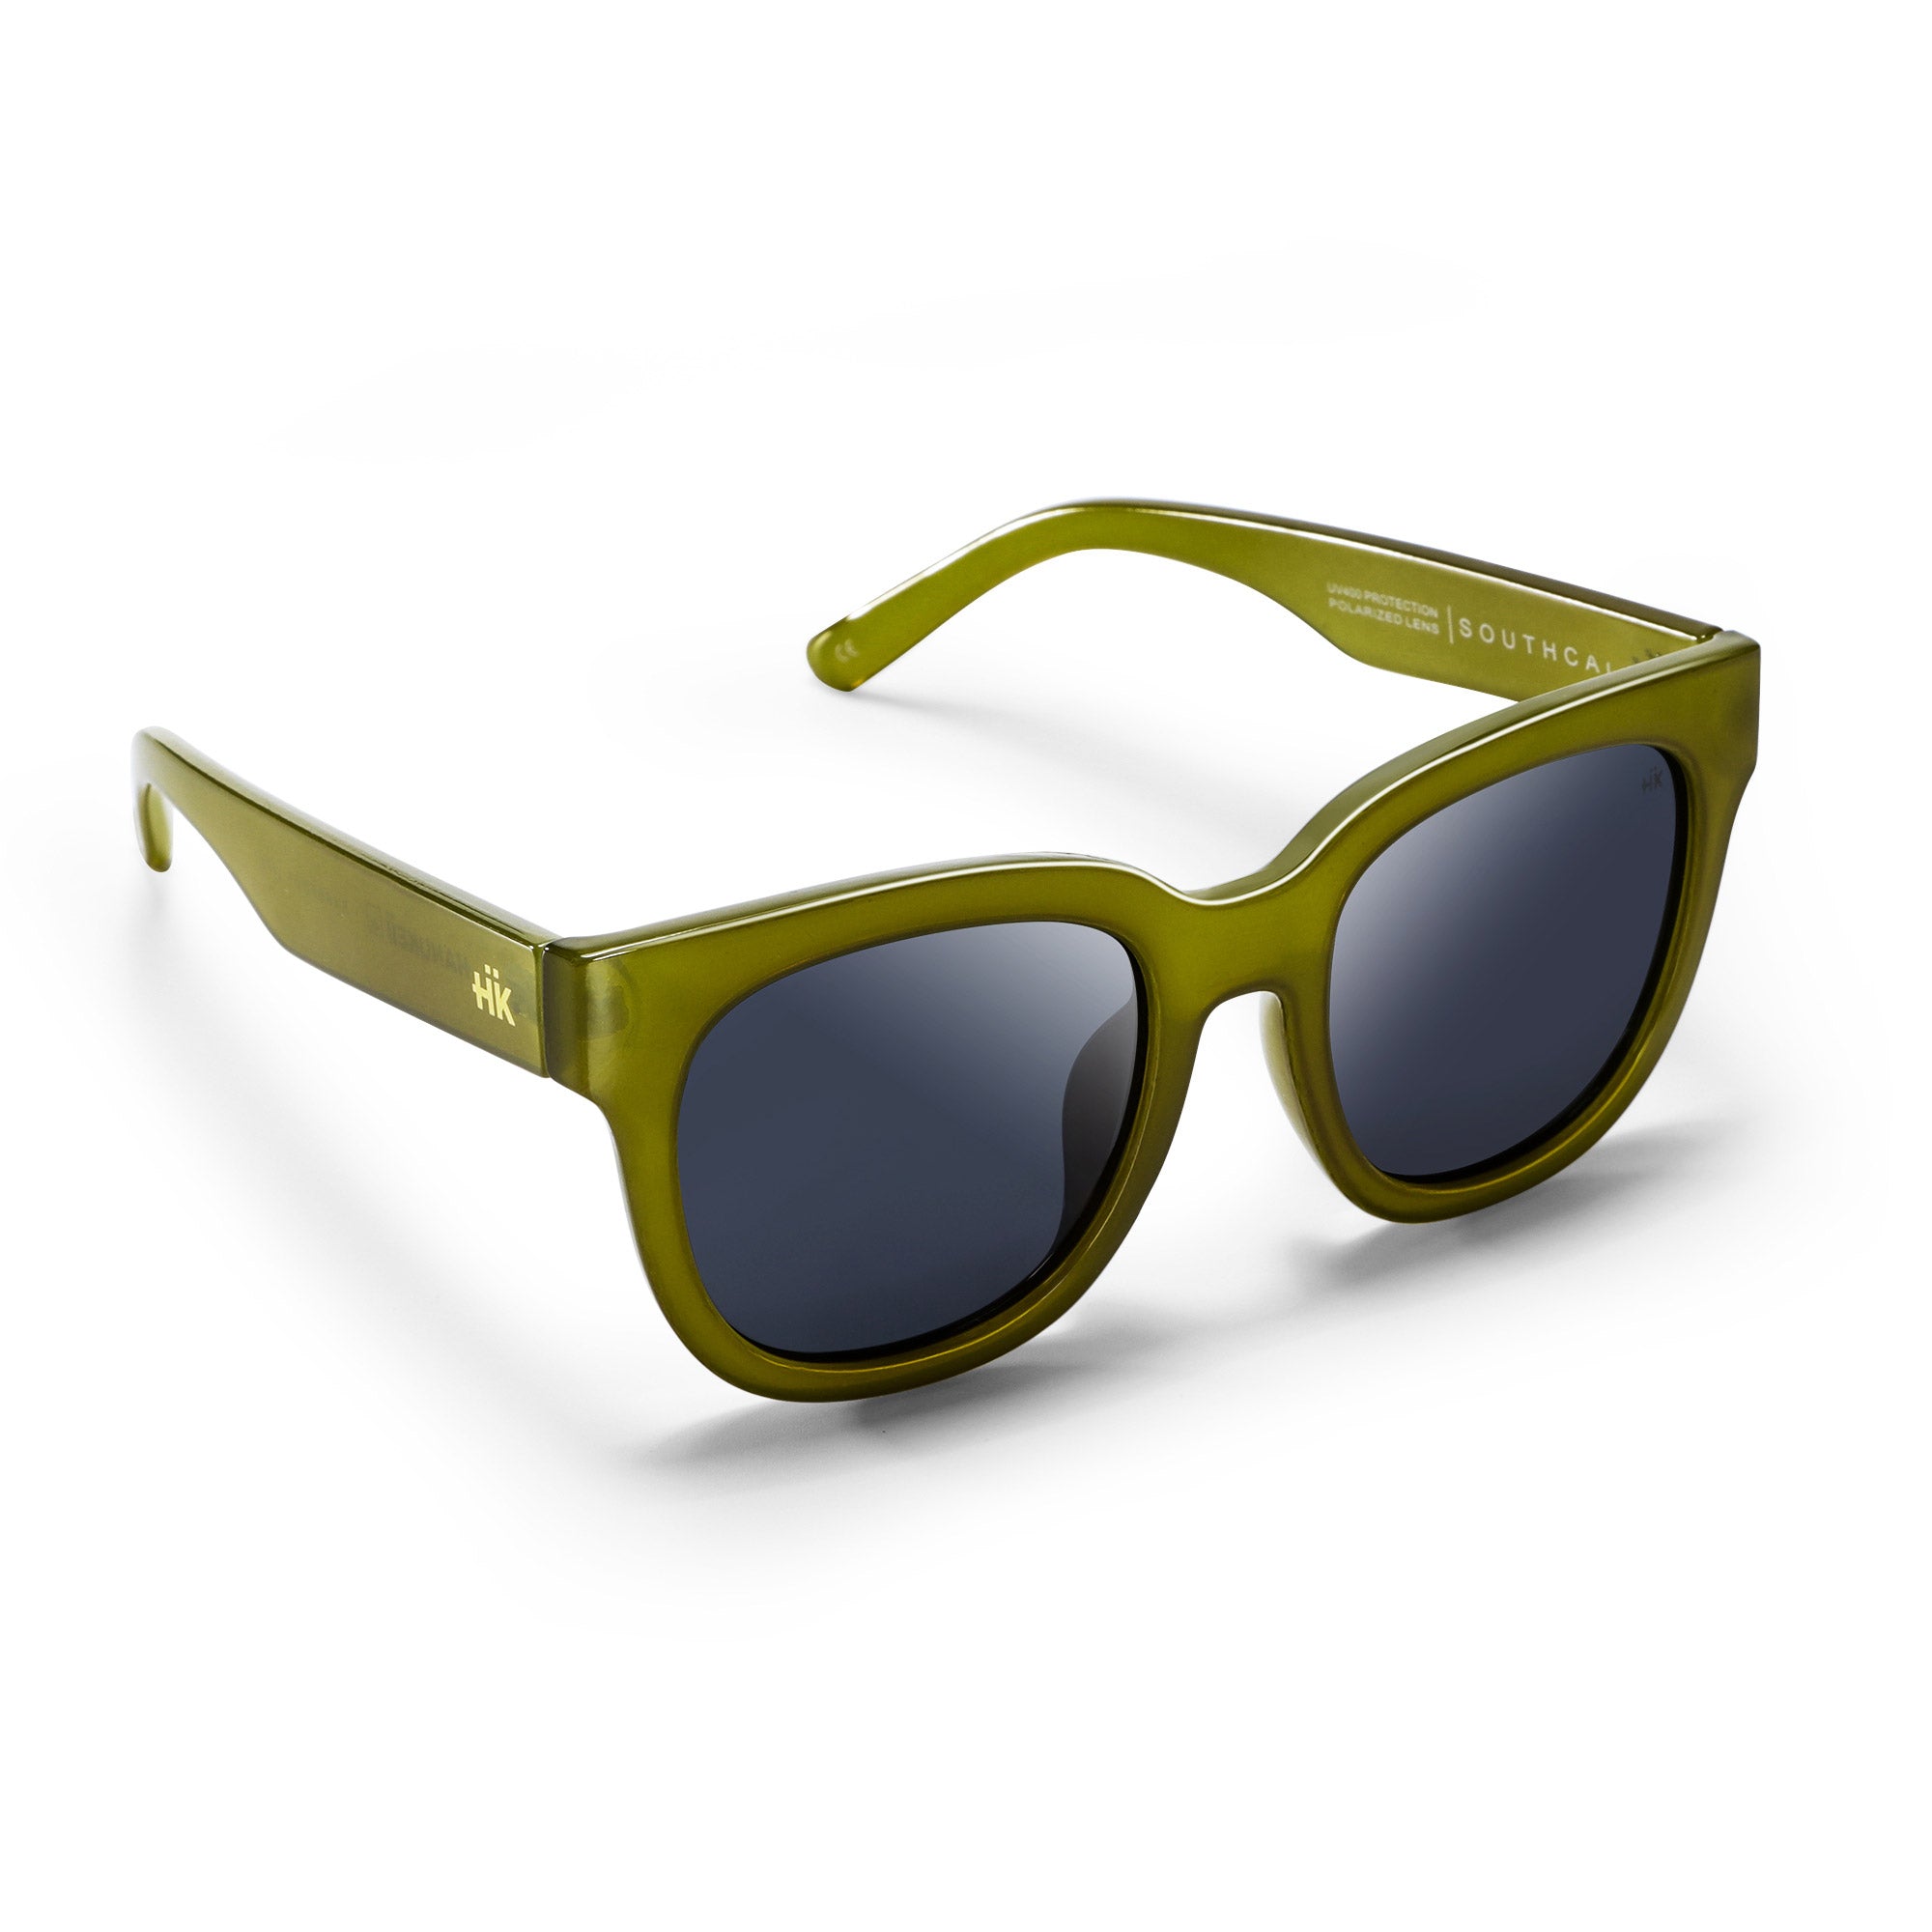 Gafas de Sol para Polarizadas Southcal Green / Black - Hanukeii